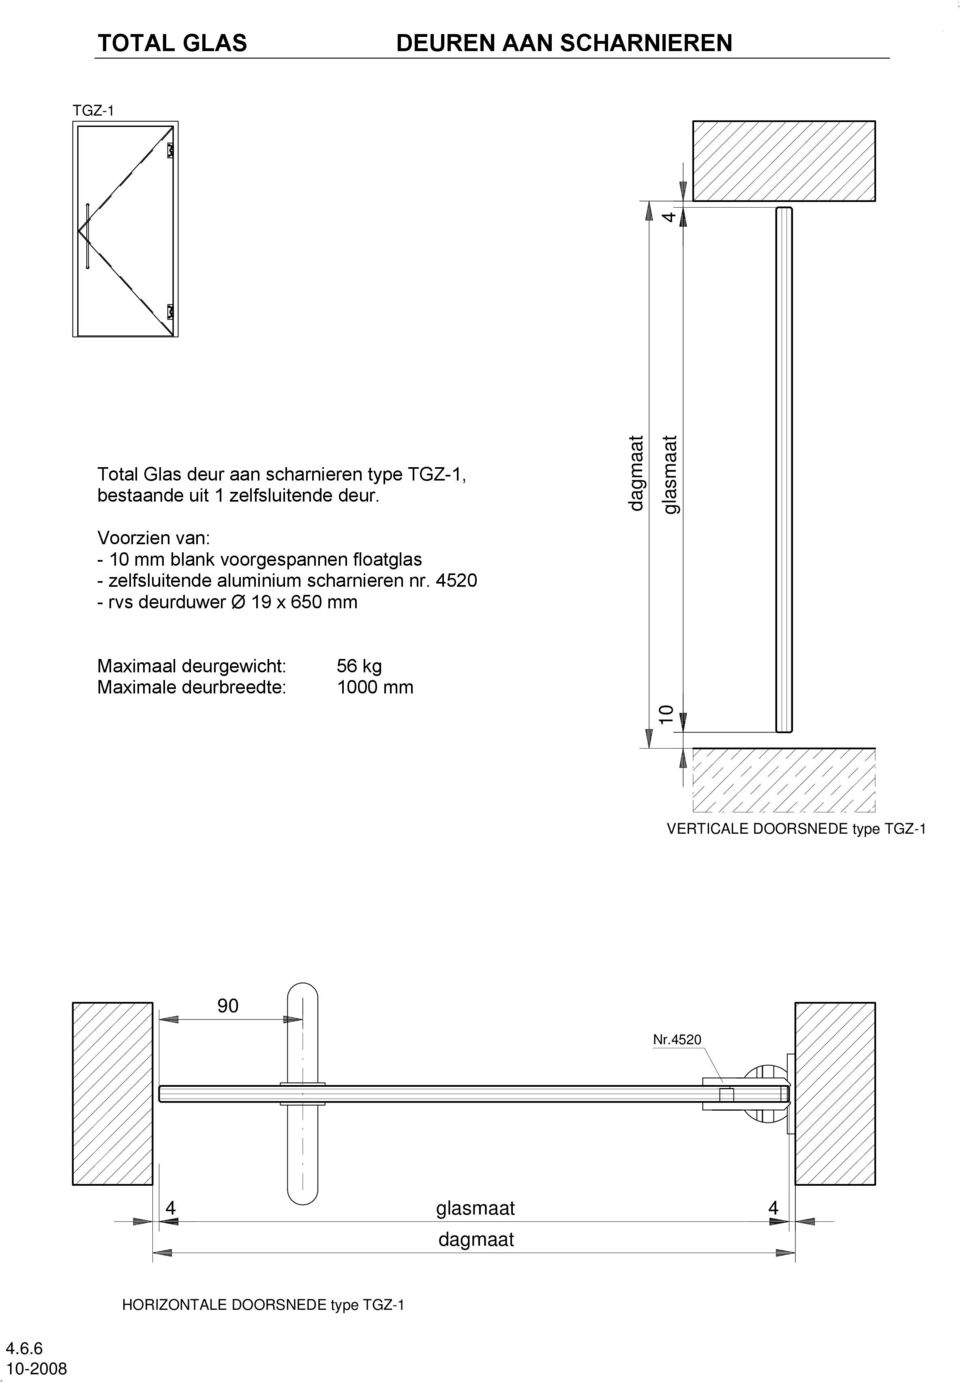 4520 - rvs deurduwer Ø 19 x 650 mm Maximaal deurgewicht: Maximale deurbreedte: 56 kg 1000 mm